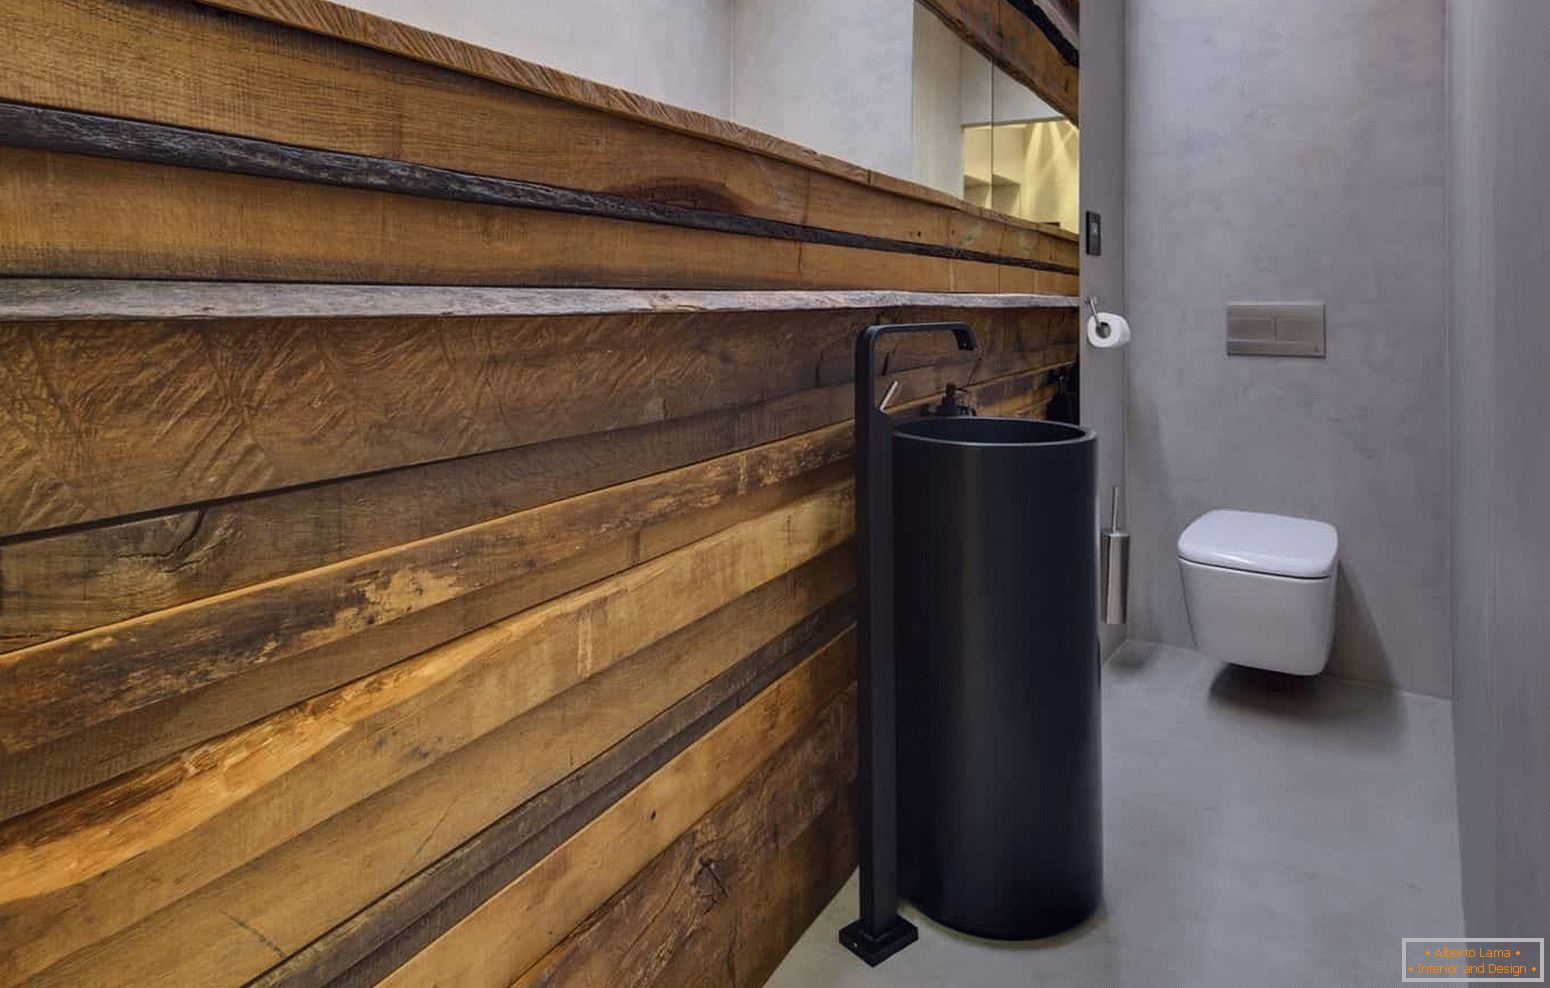 Сучасний дизайн маленького туалету в еко стилі з незвичайною раковиною